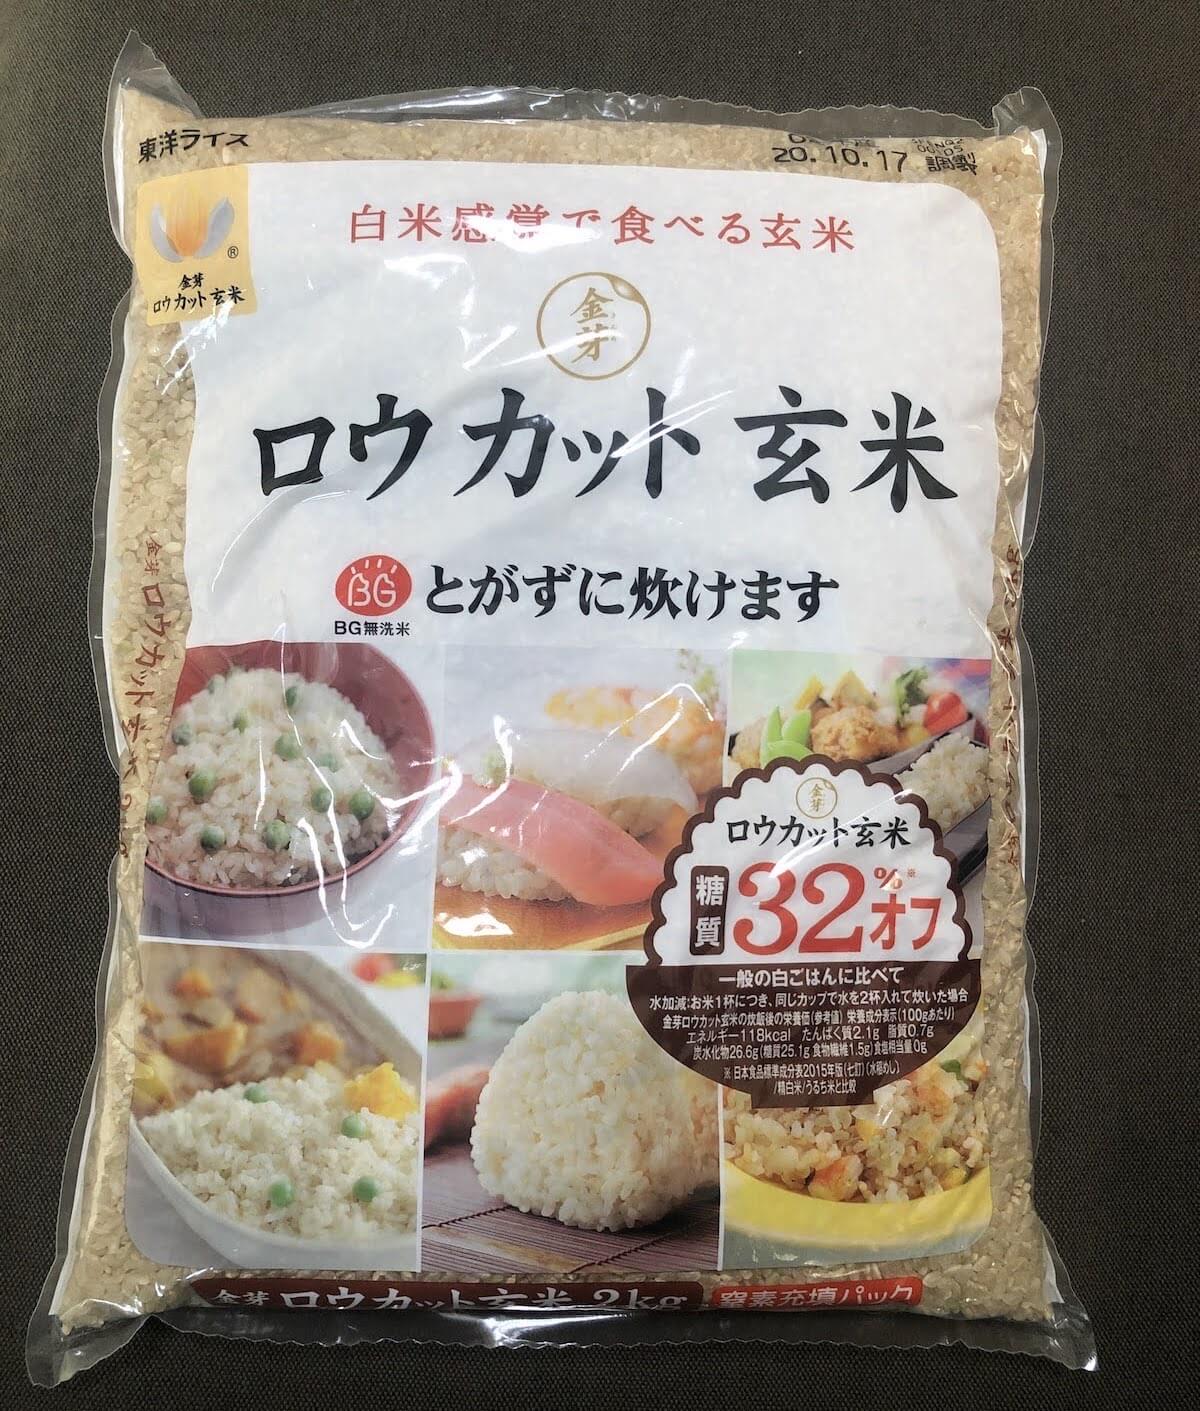 【ロウカット玄米の特徴】白米感覚で食べれて栄養たっぷりの美味しいお米でした | はたのブログ